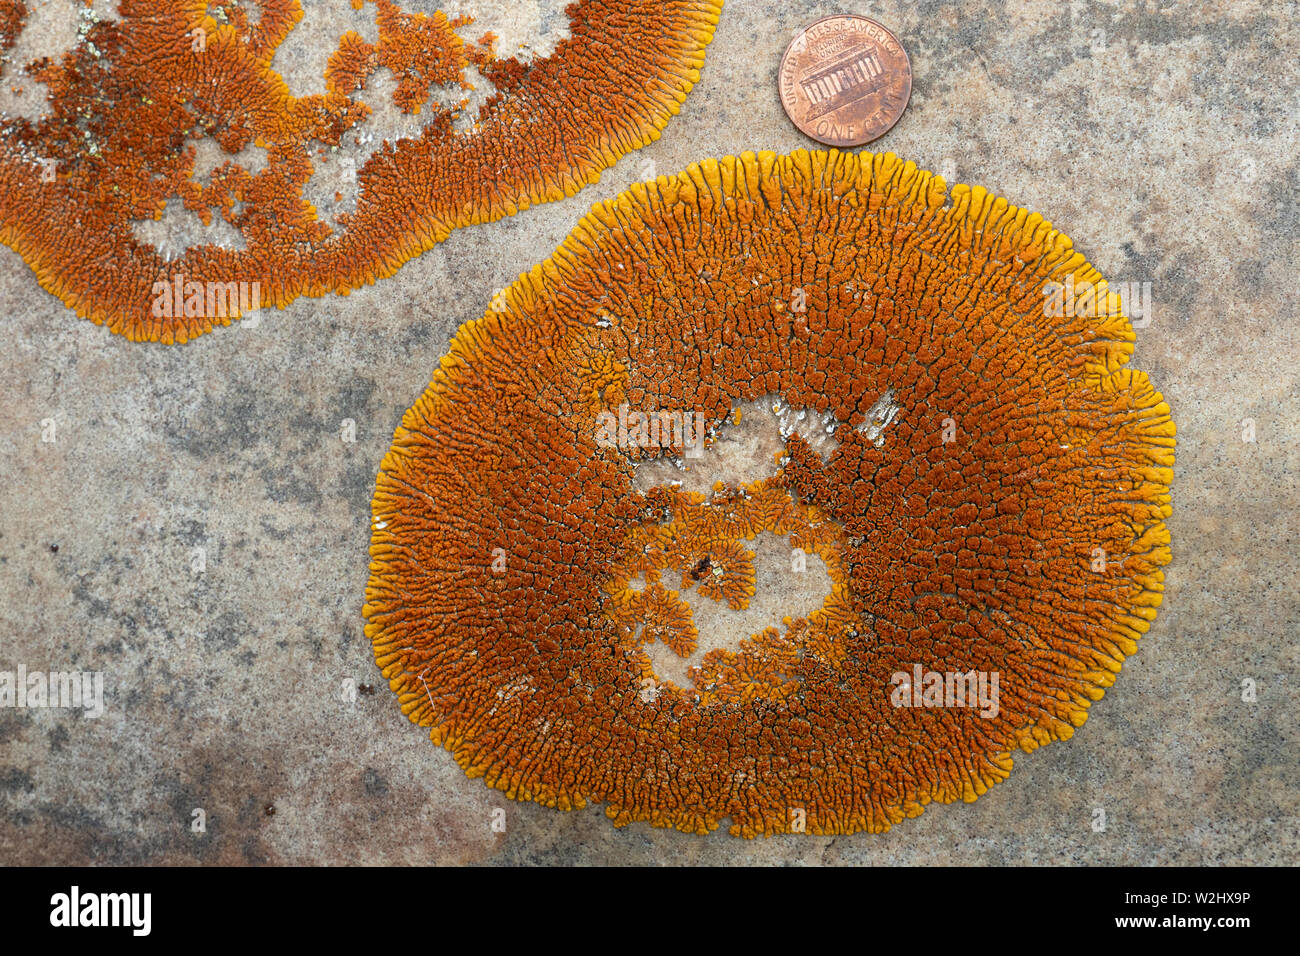 Vista ravvicinata di color arancio lichene sunburst (Rusavskia elegans, che sostituisce Xanthoria elegans) su pietra arenaria. Noi penny per la scala. Foto Stock